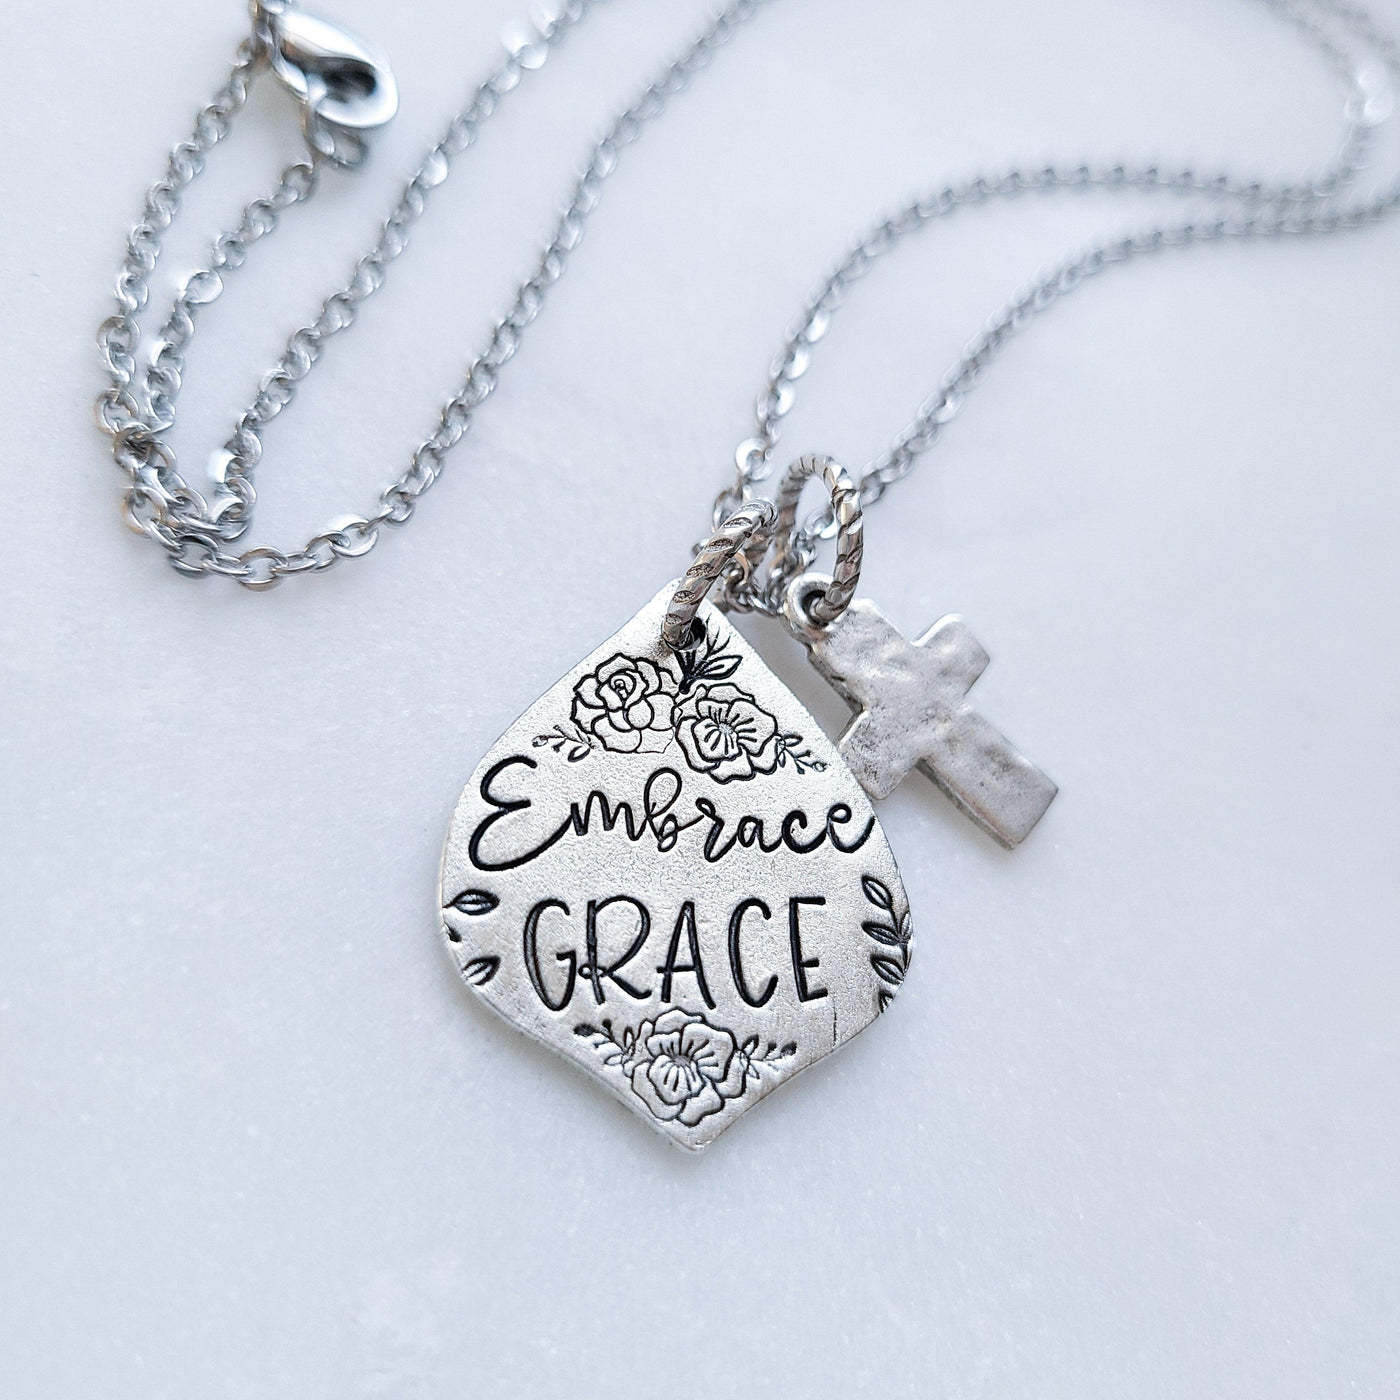 Embrace Grace | Necklaces - Little Blue Bus Jewelry